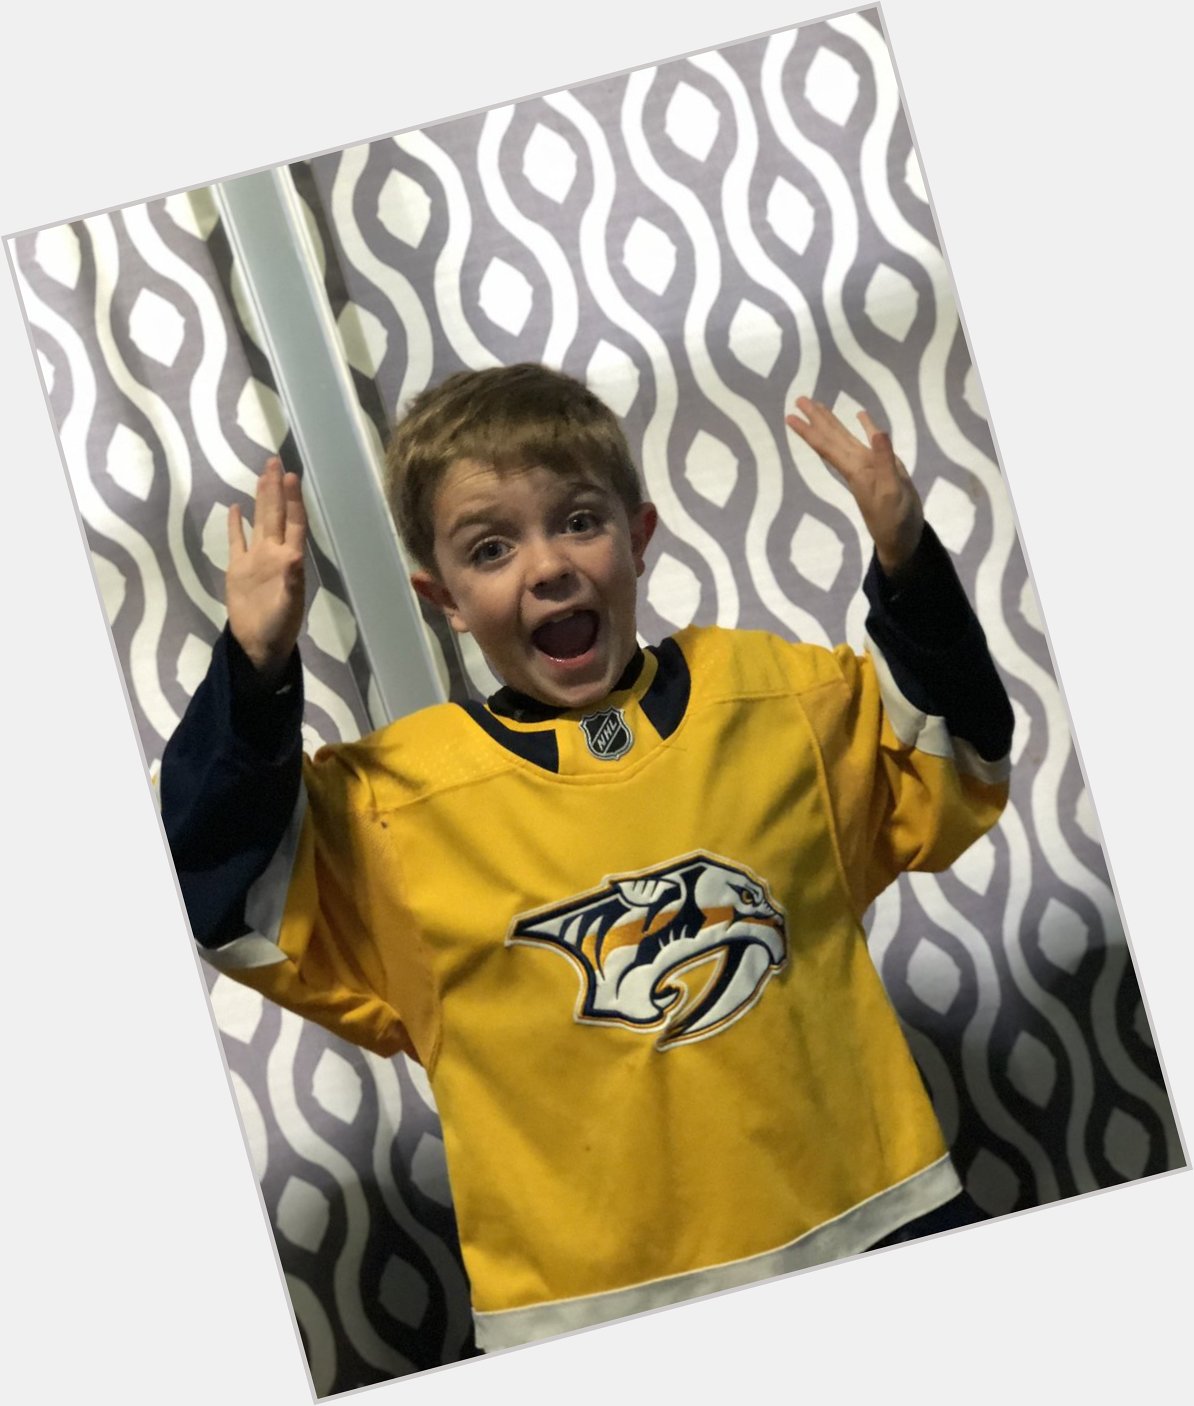 Happy 9th birthday to my hockey loving boy! (And Pekka Rinne!)  